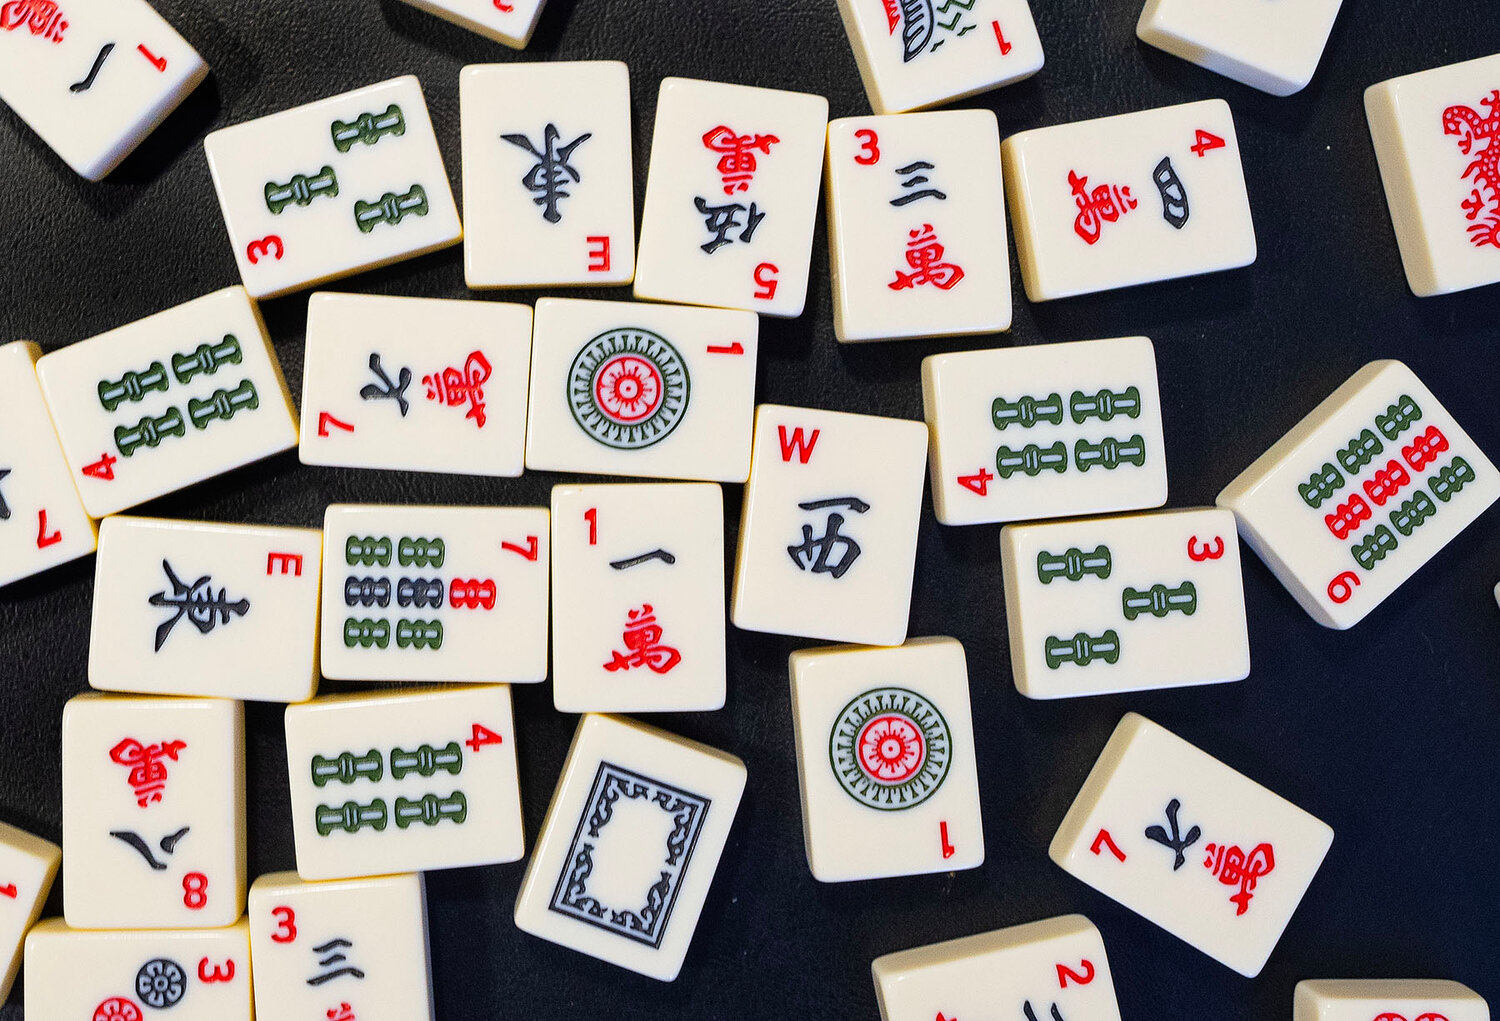 Mahjong tiles.